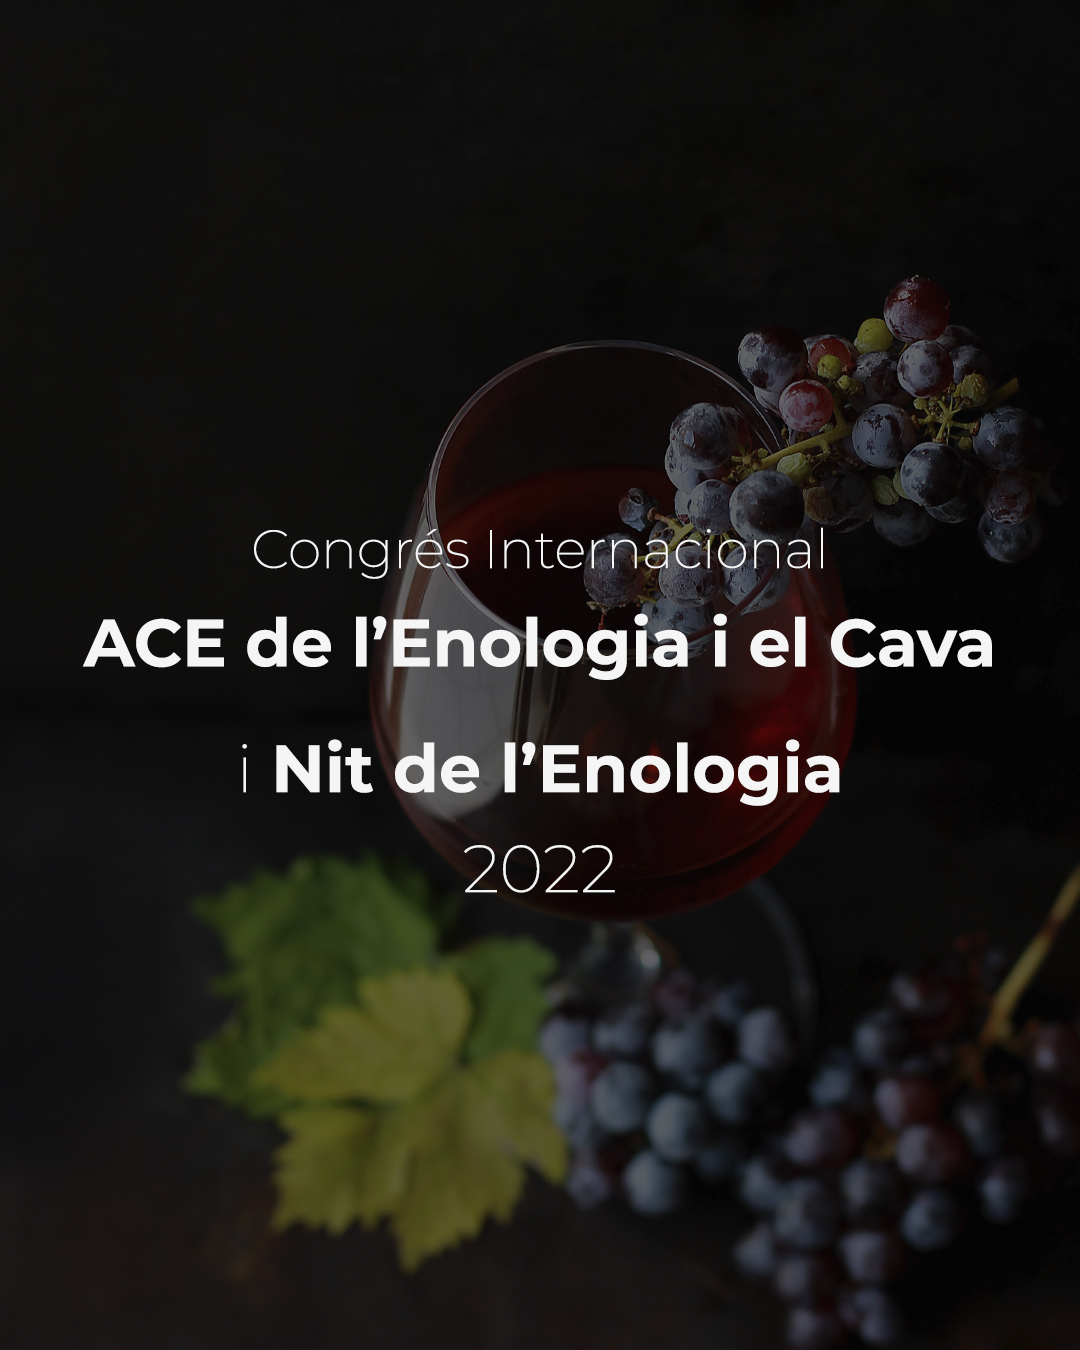 Read more about the article Congrés Internacional ACE de l’Enologia i el Cava i Nit de l’Enologia 2022.